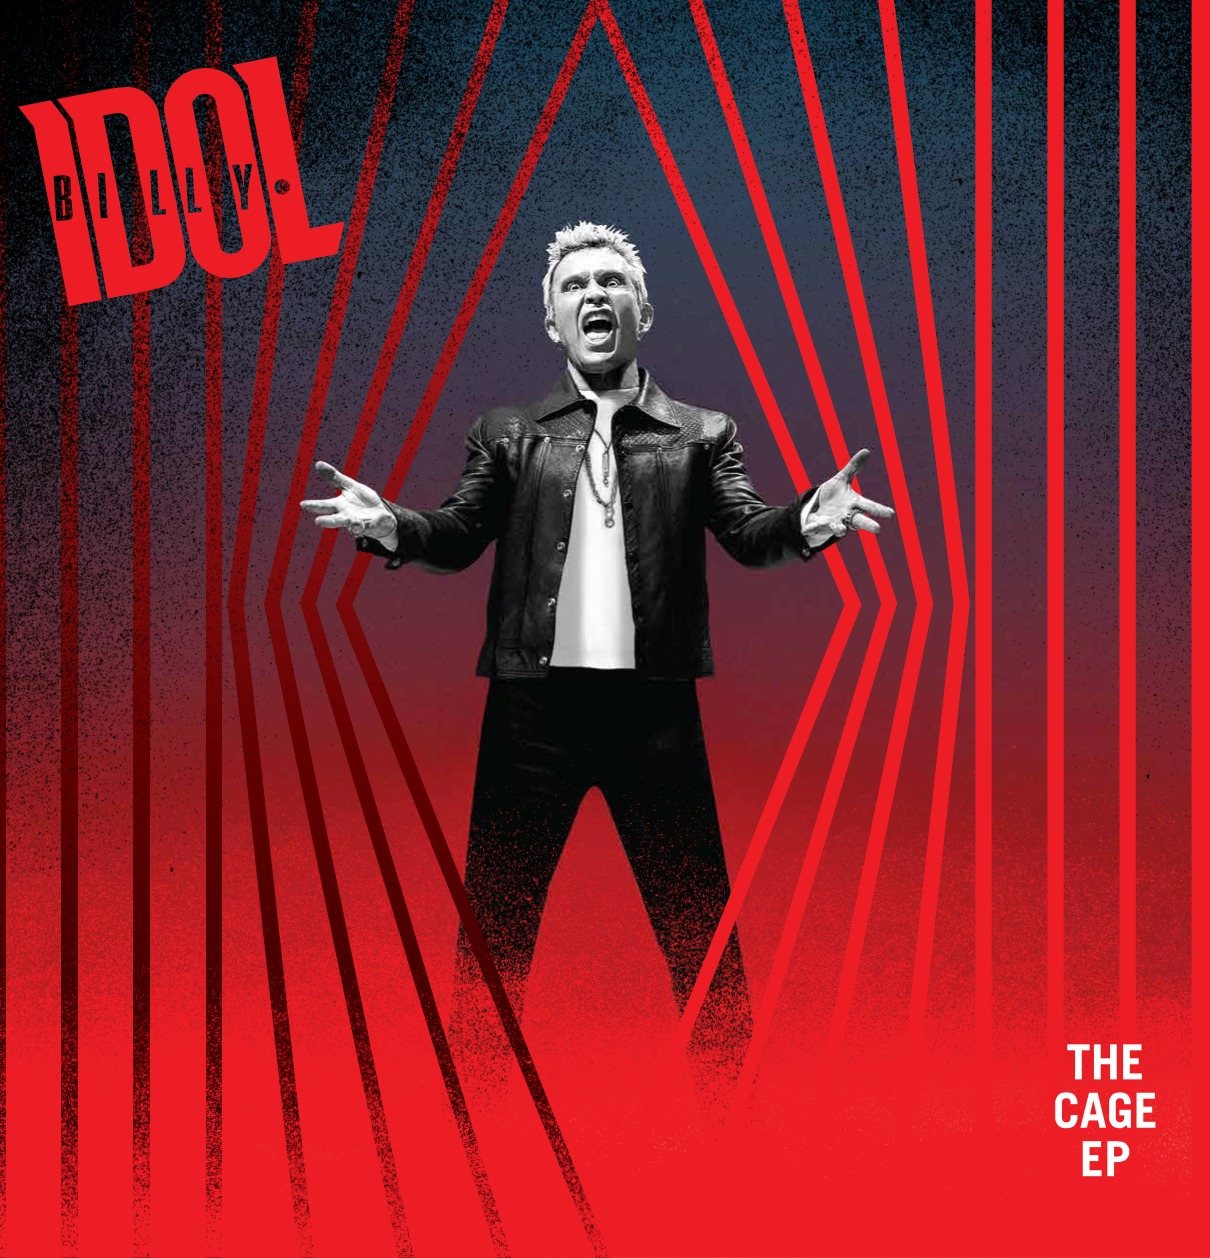 Billy Idol presenta su nuevo EP "The Cage", disponible el 23 de septiembre 1